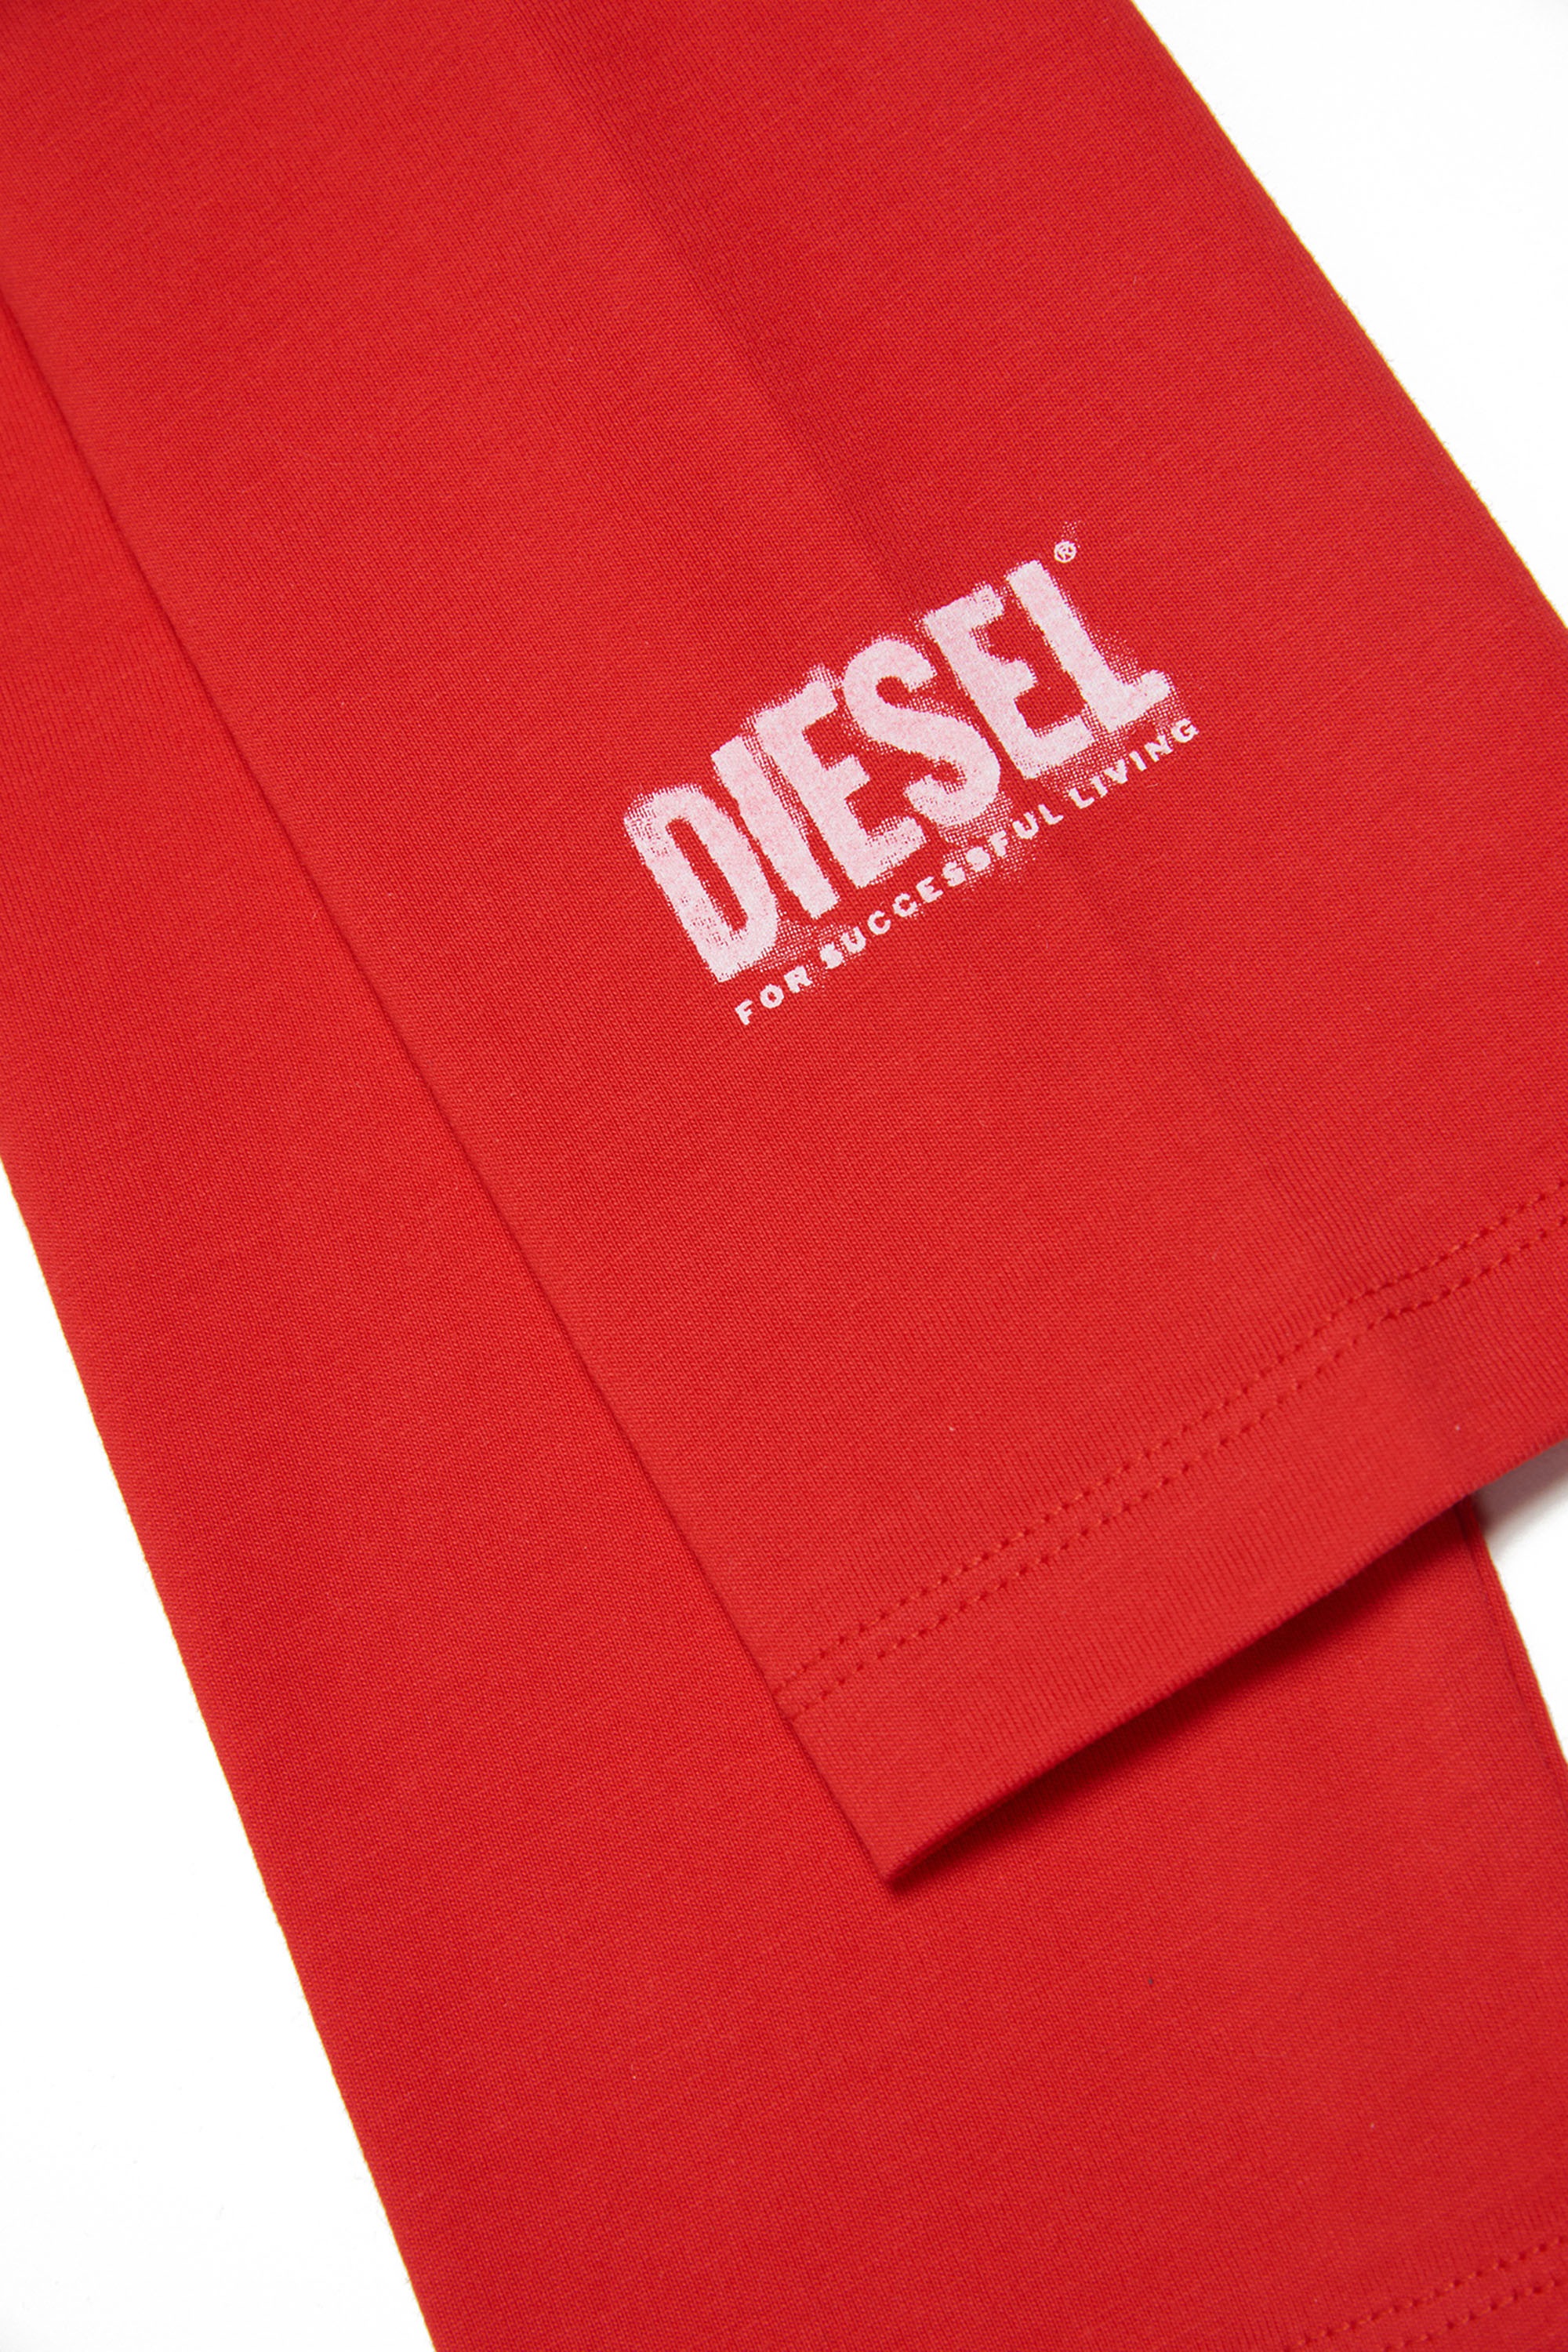 Diesel - PARITY, Red - Image 3